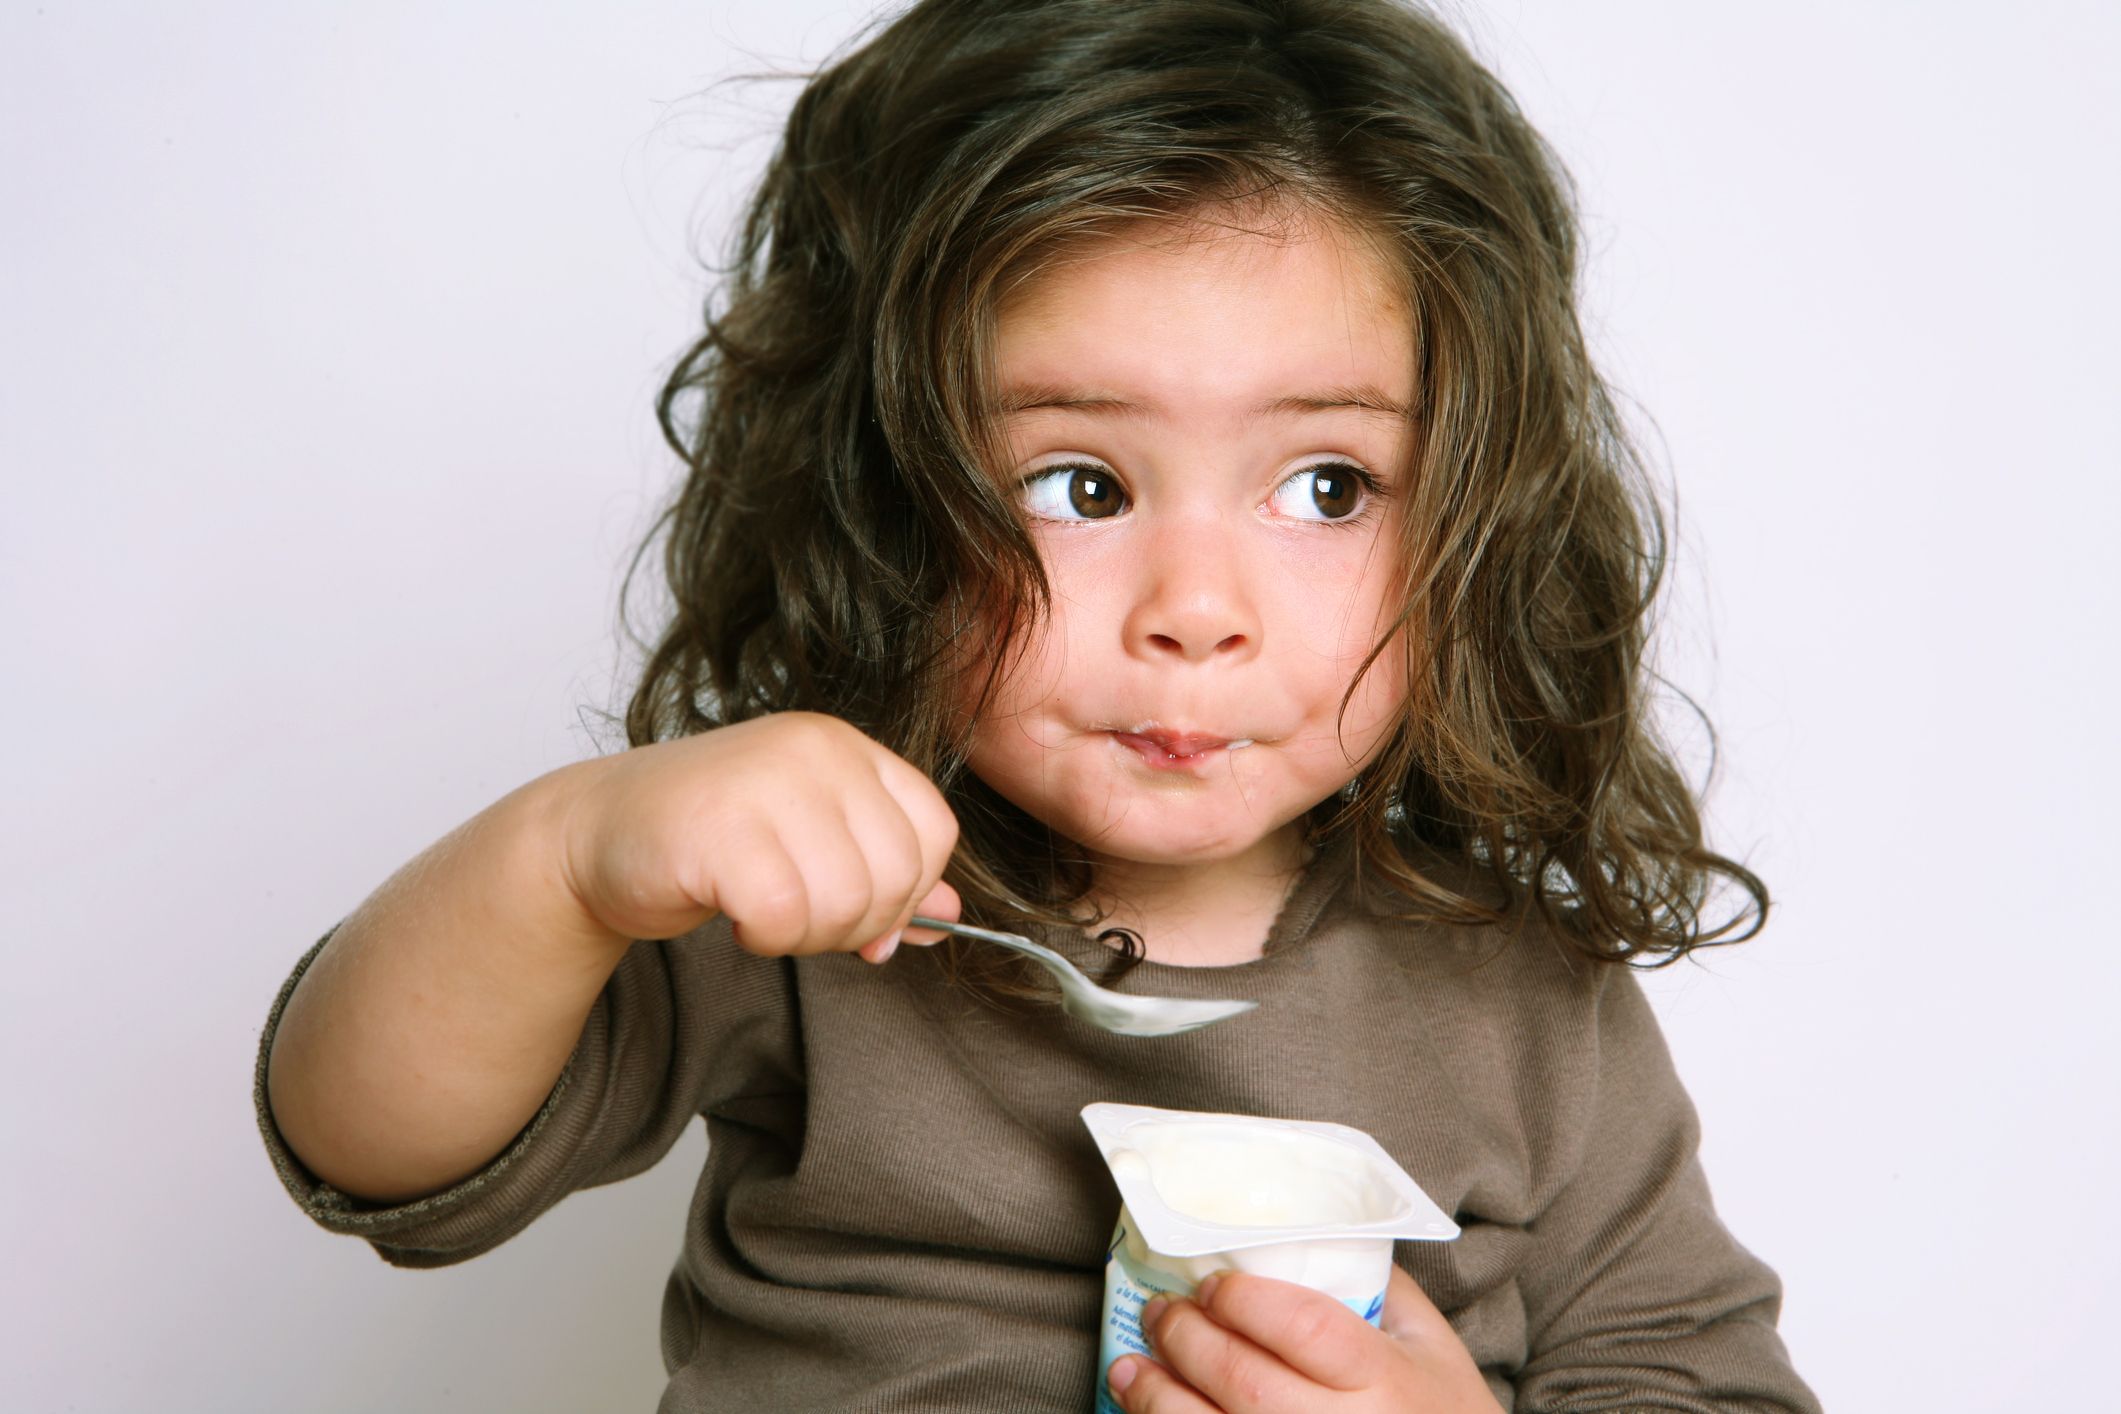 Little girl eating yogurt enthusiastically